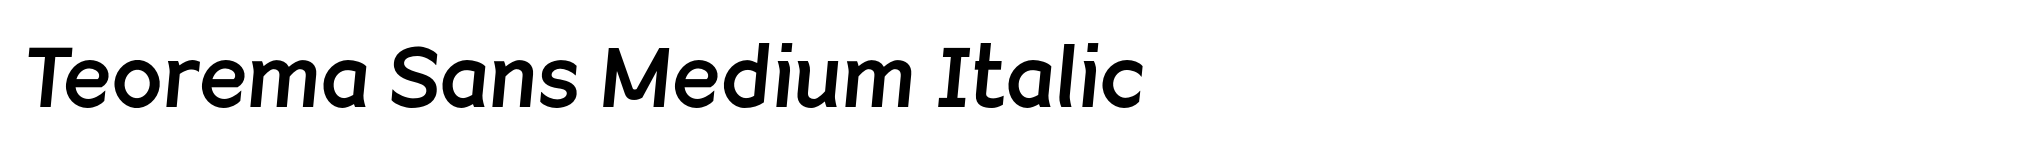 Teorema Sans Medium Italic image